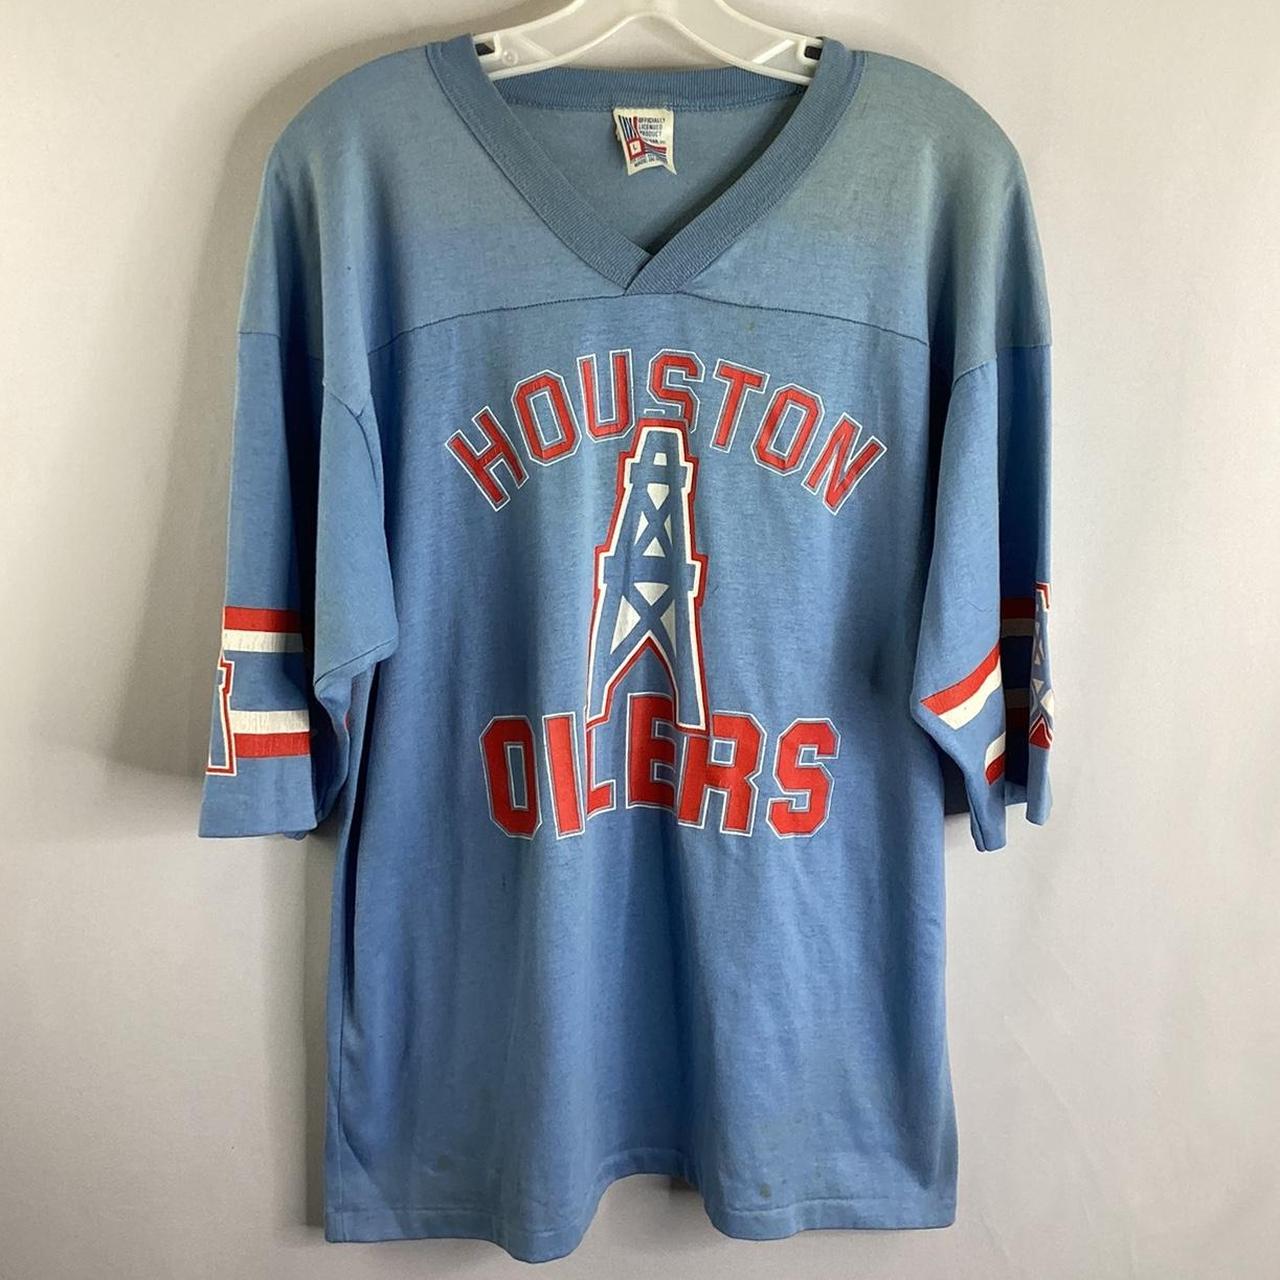 Houston oilers vintage shirt, houston oilers vintage - Depop